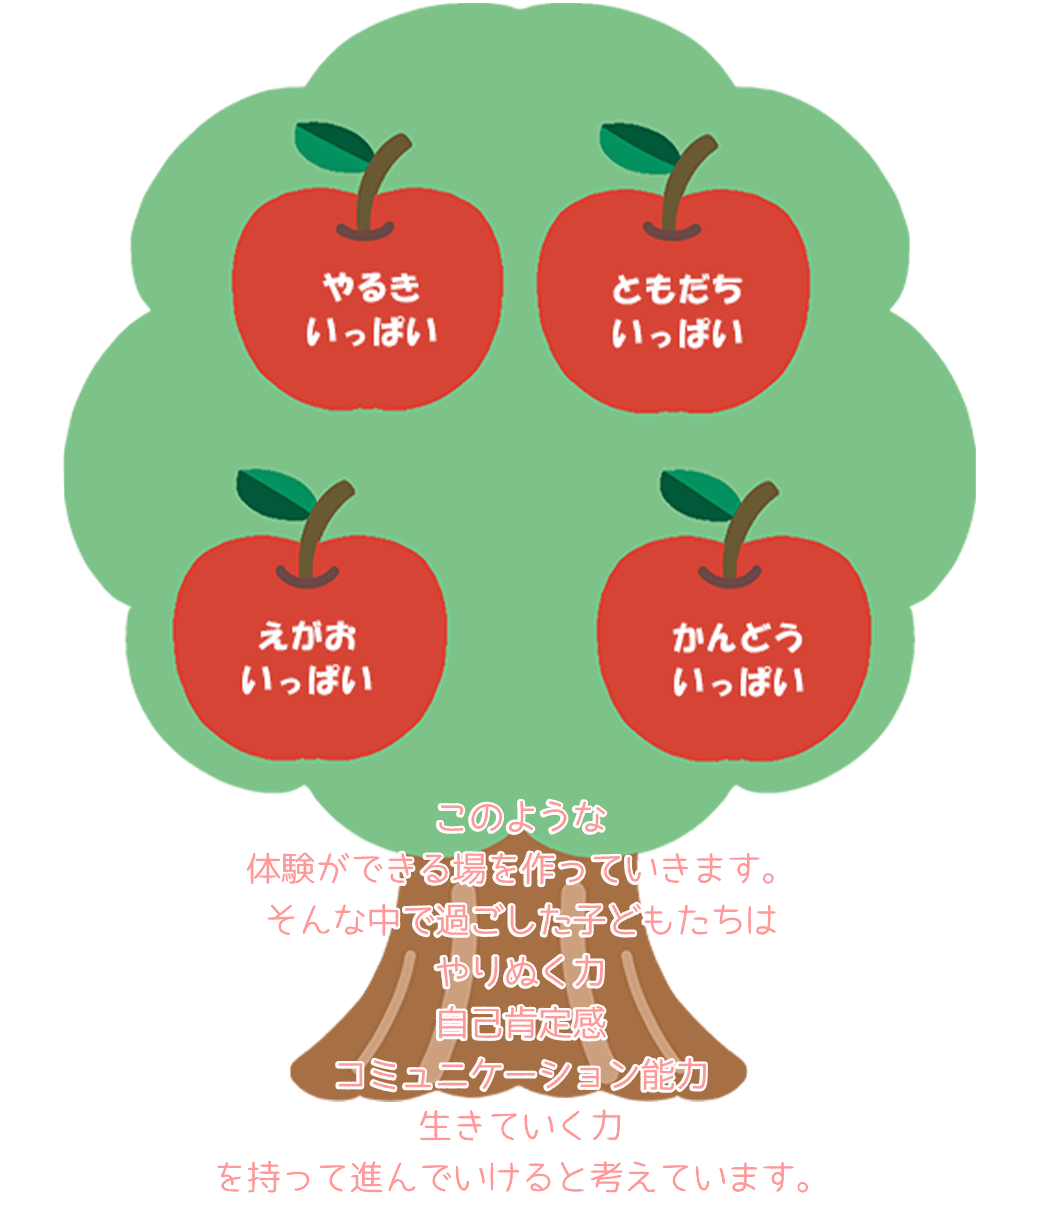 小倉幼稚園 りんごの木